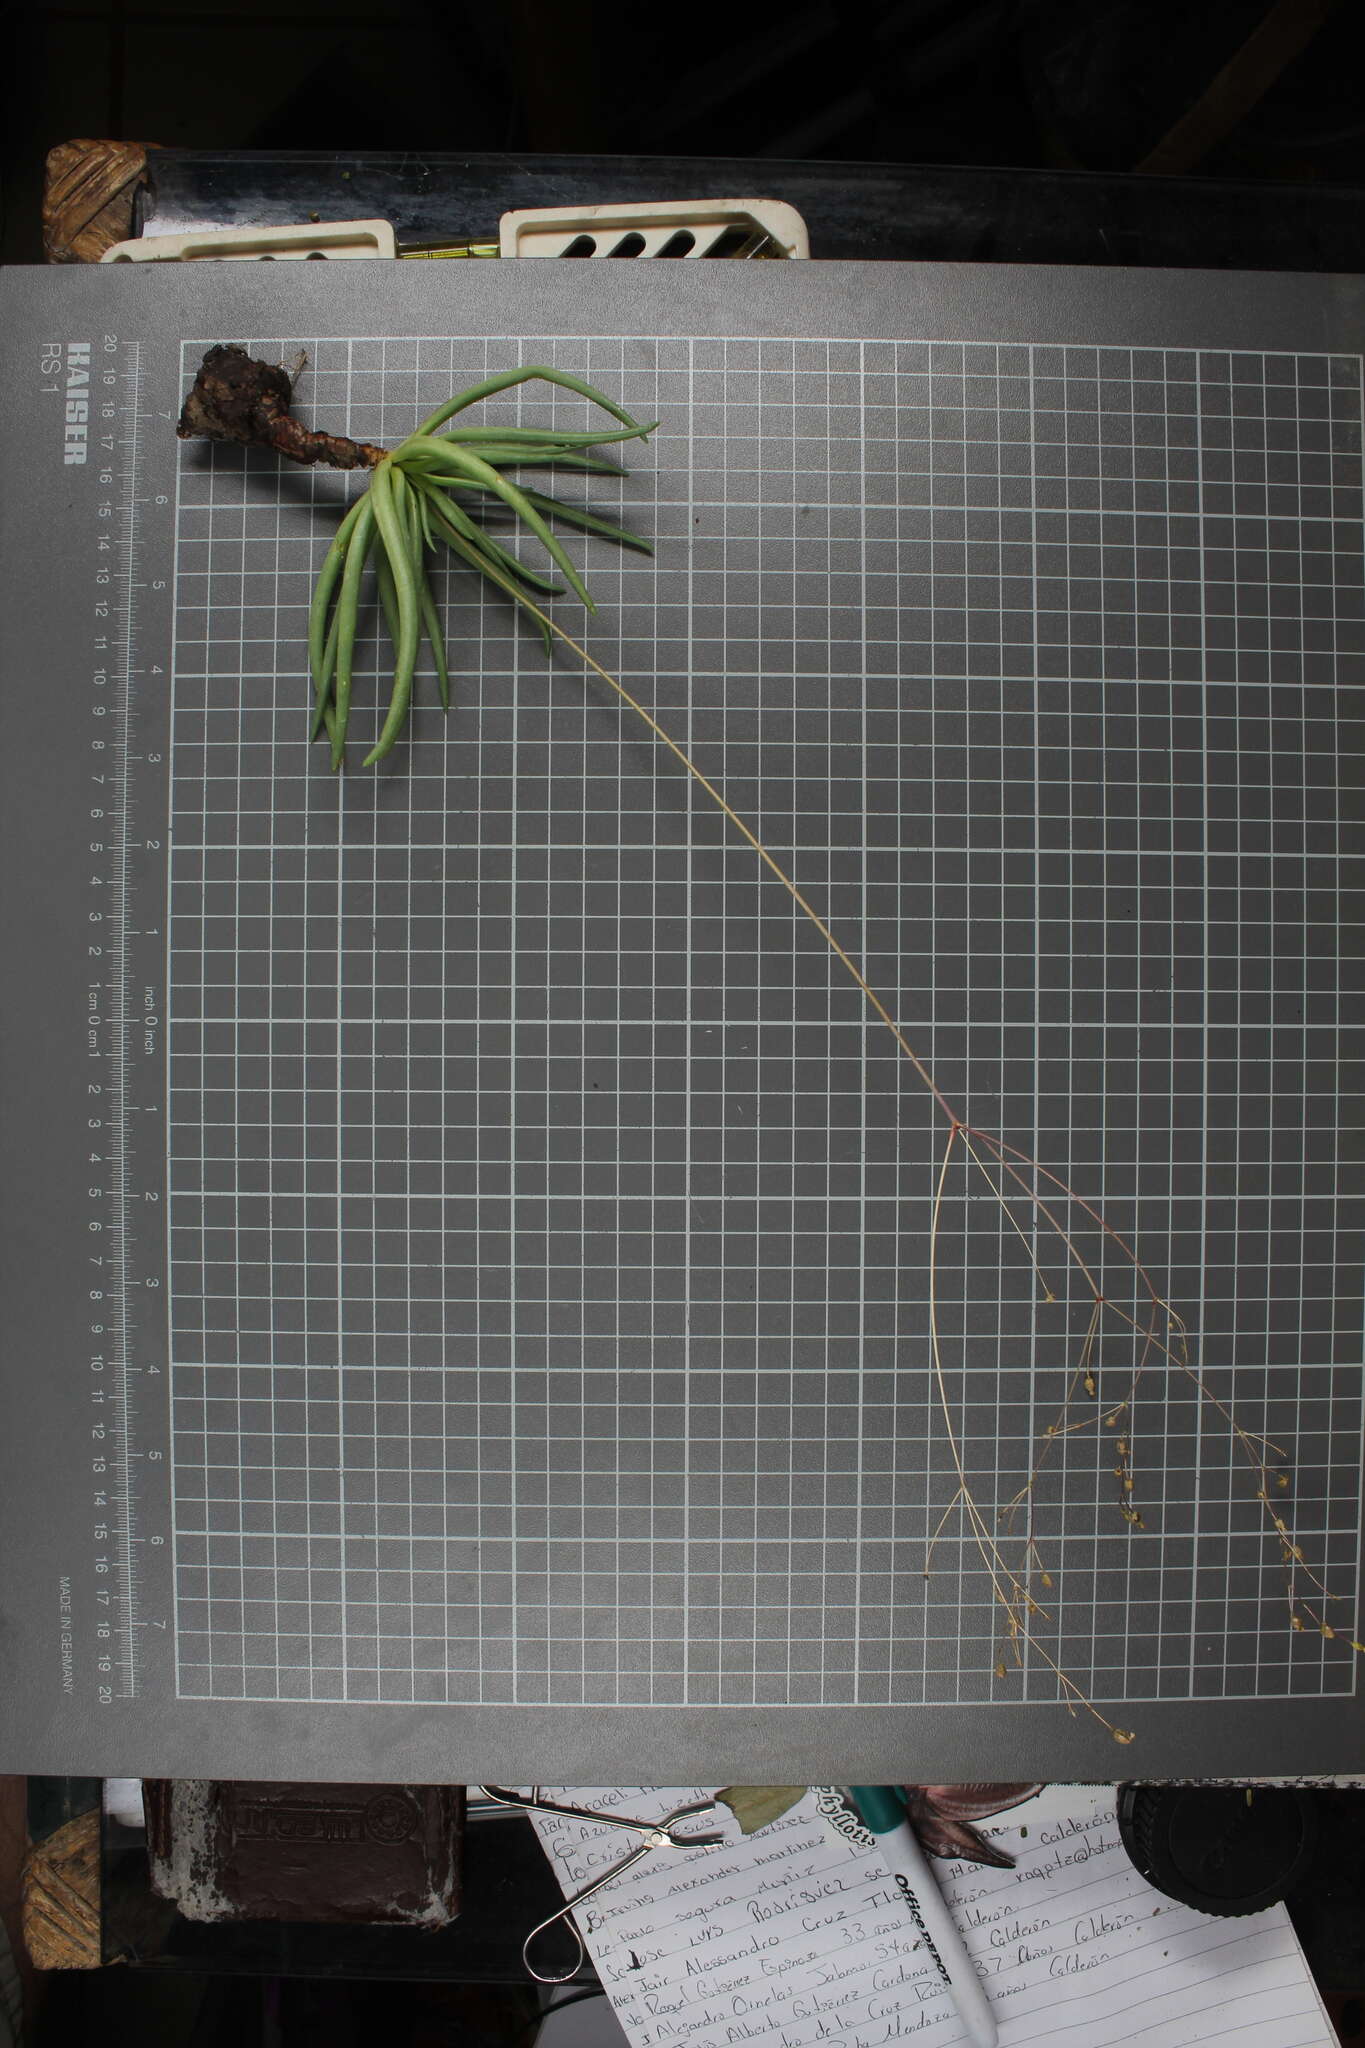 Image of Phemeranthus palmeri (Rose & Standl.) T. M. Price